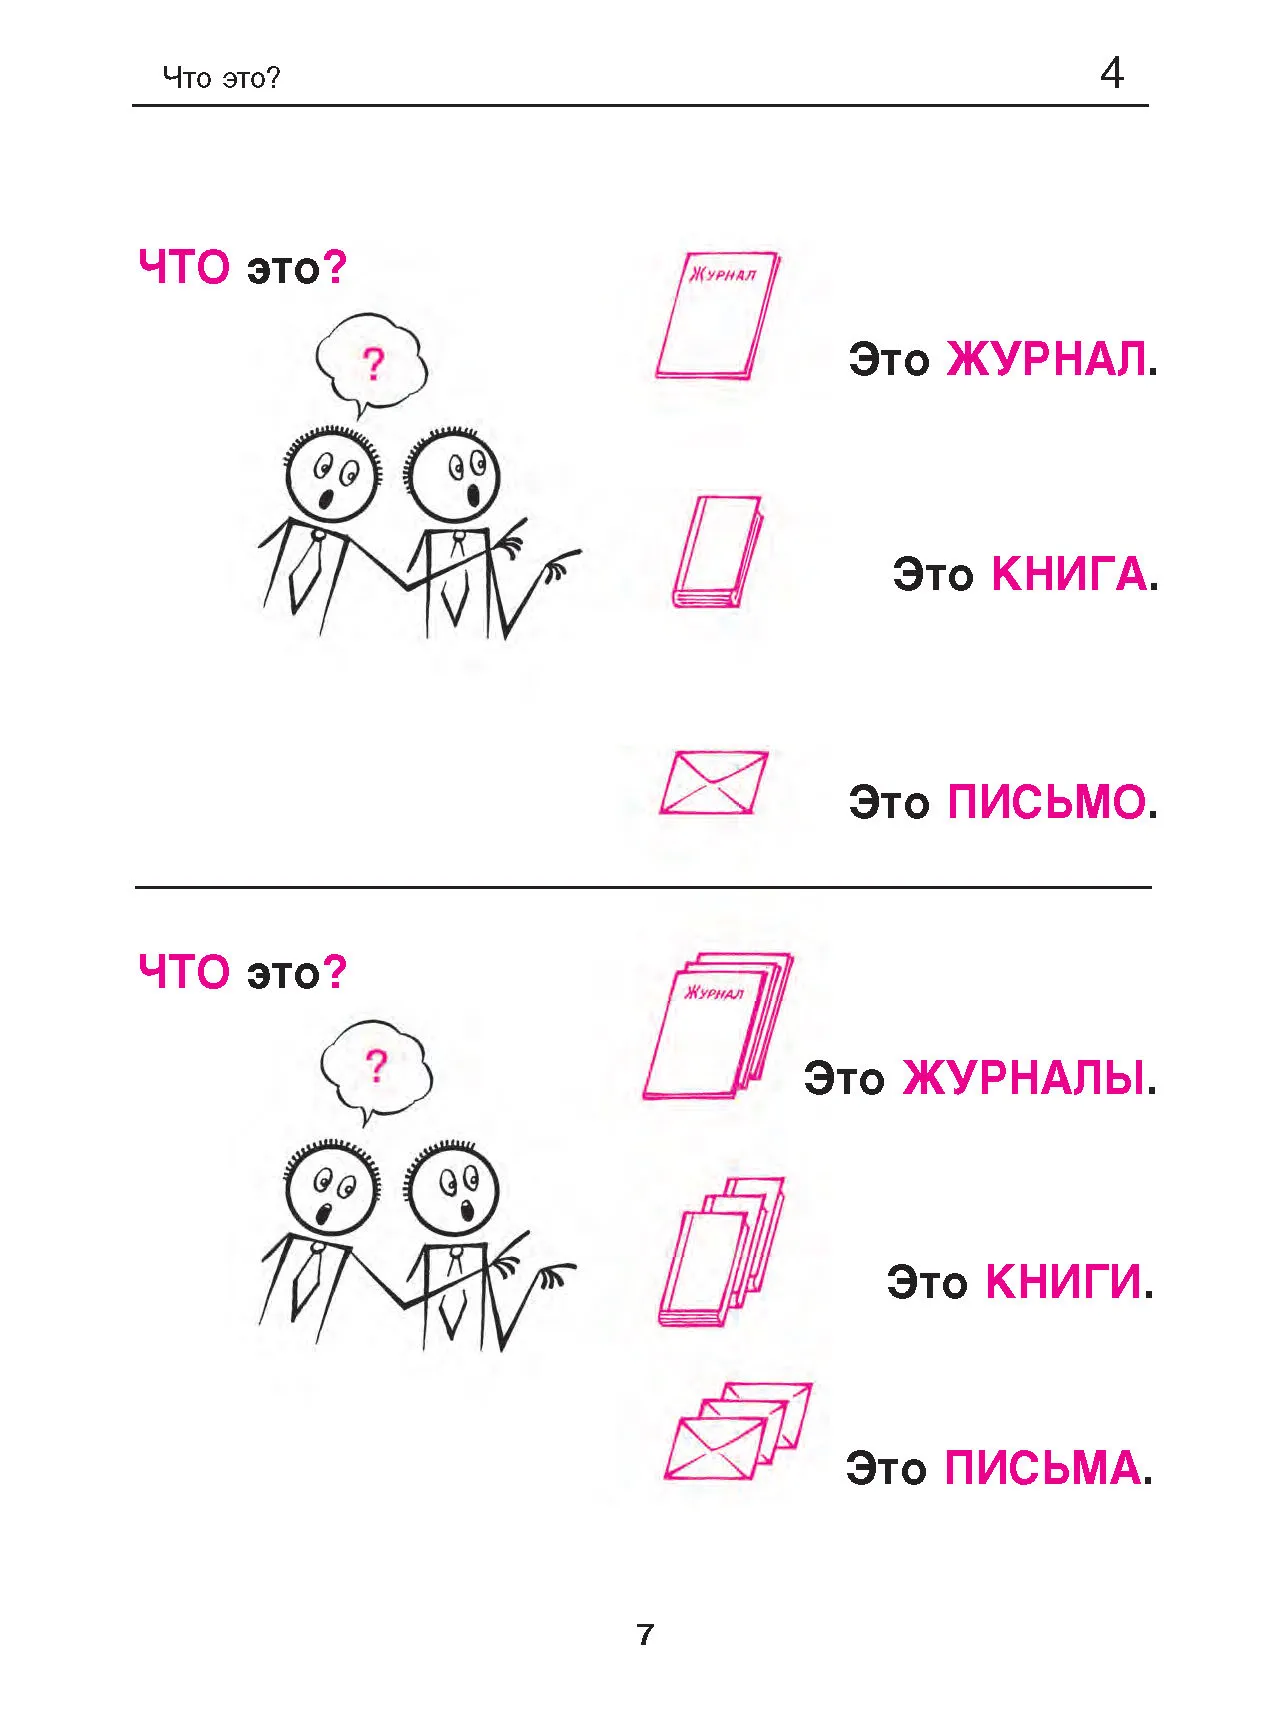 Начинающий изучать русский язык